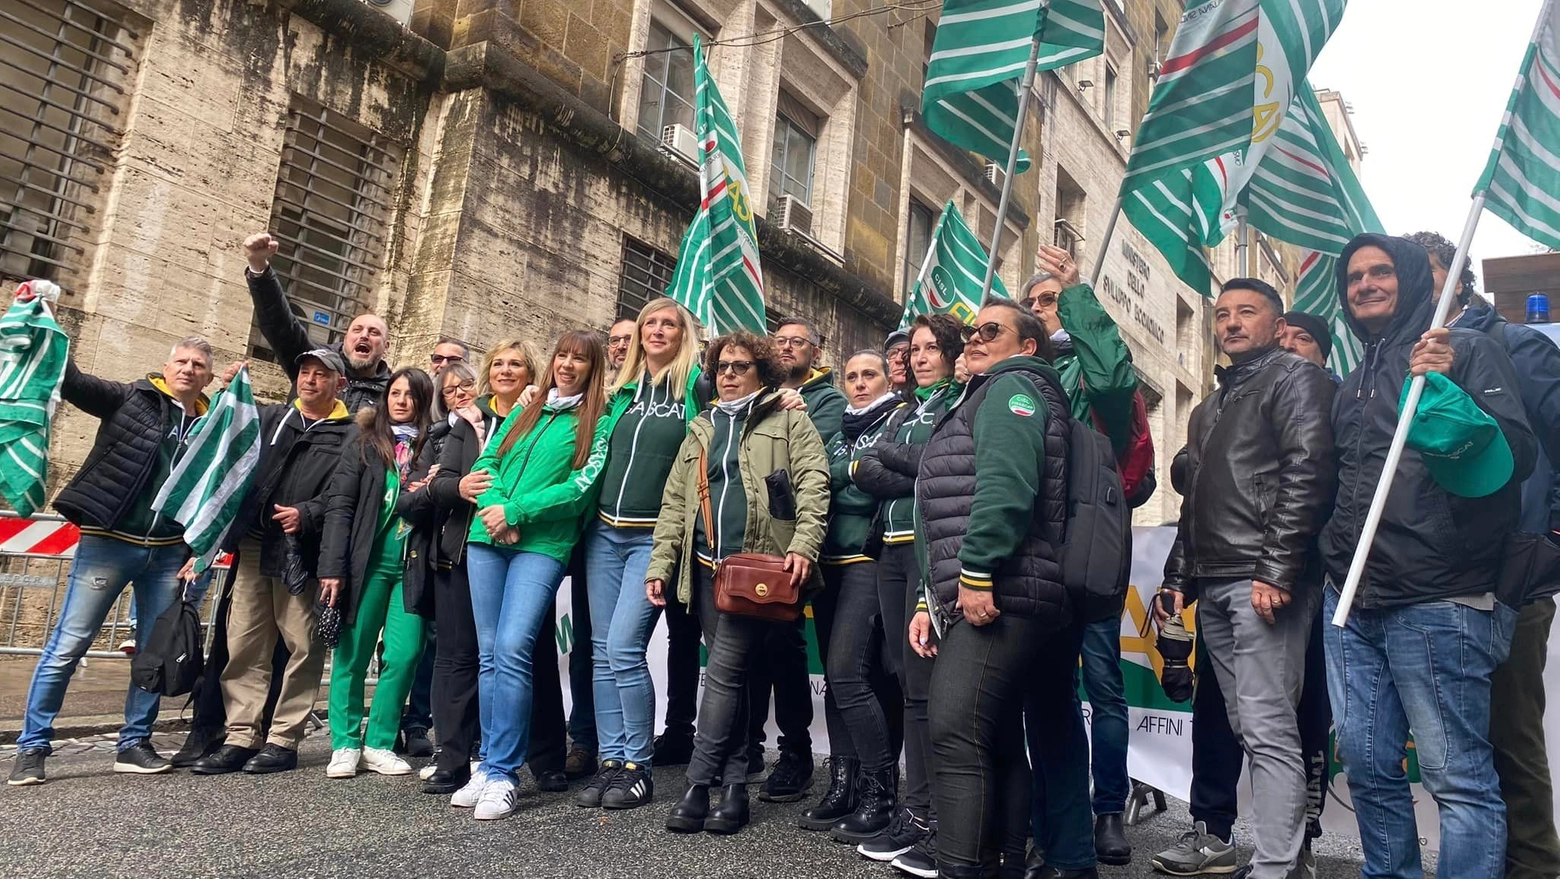 La protesta davanti al Ministero a Roma dei sindacati